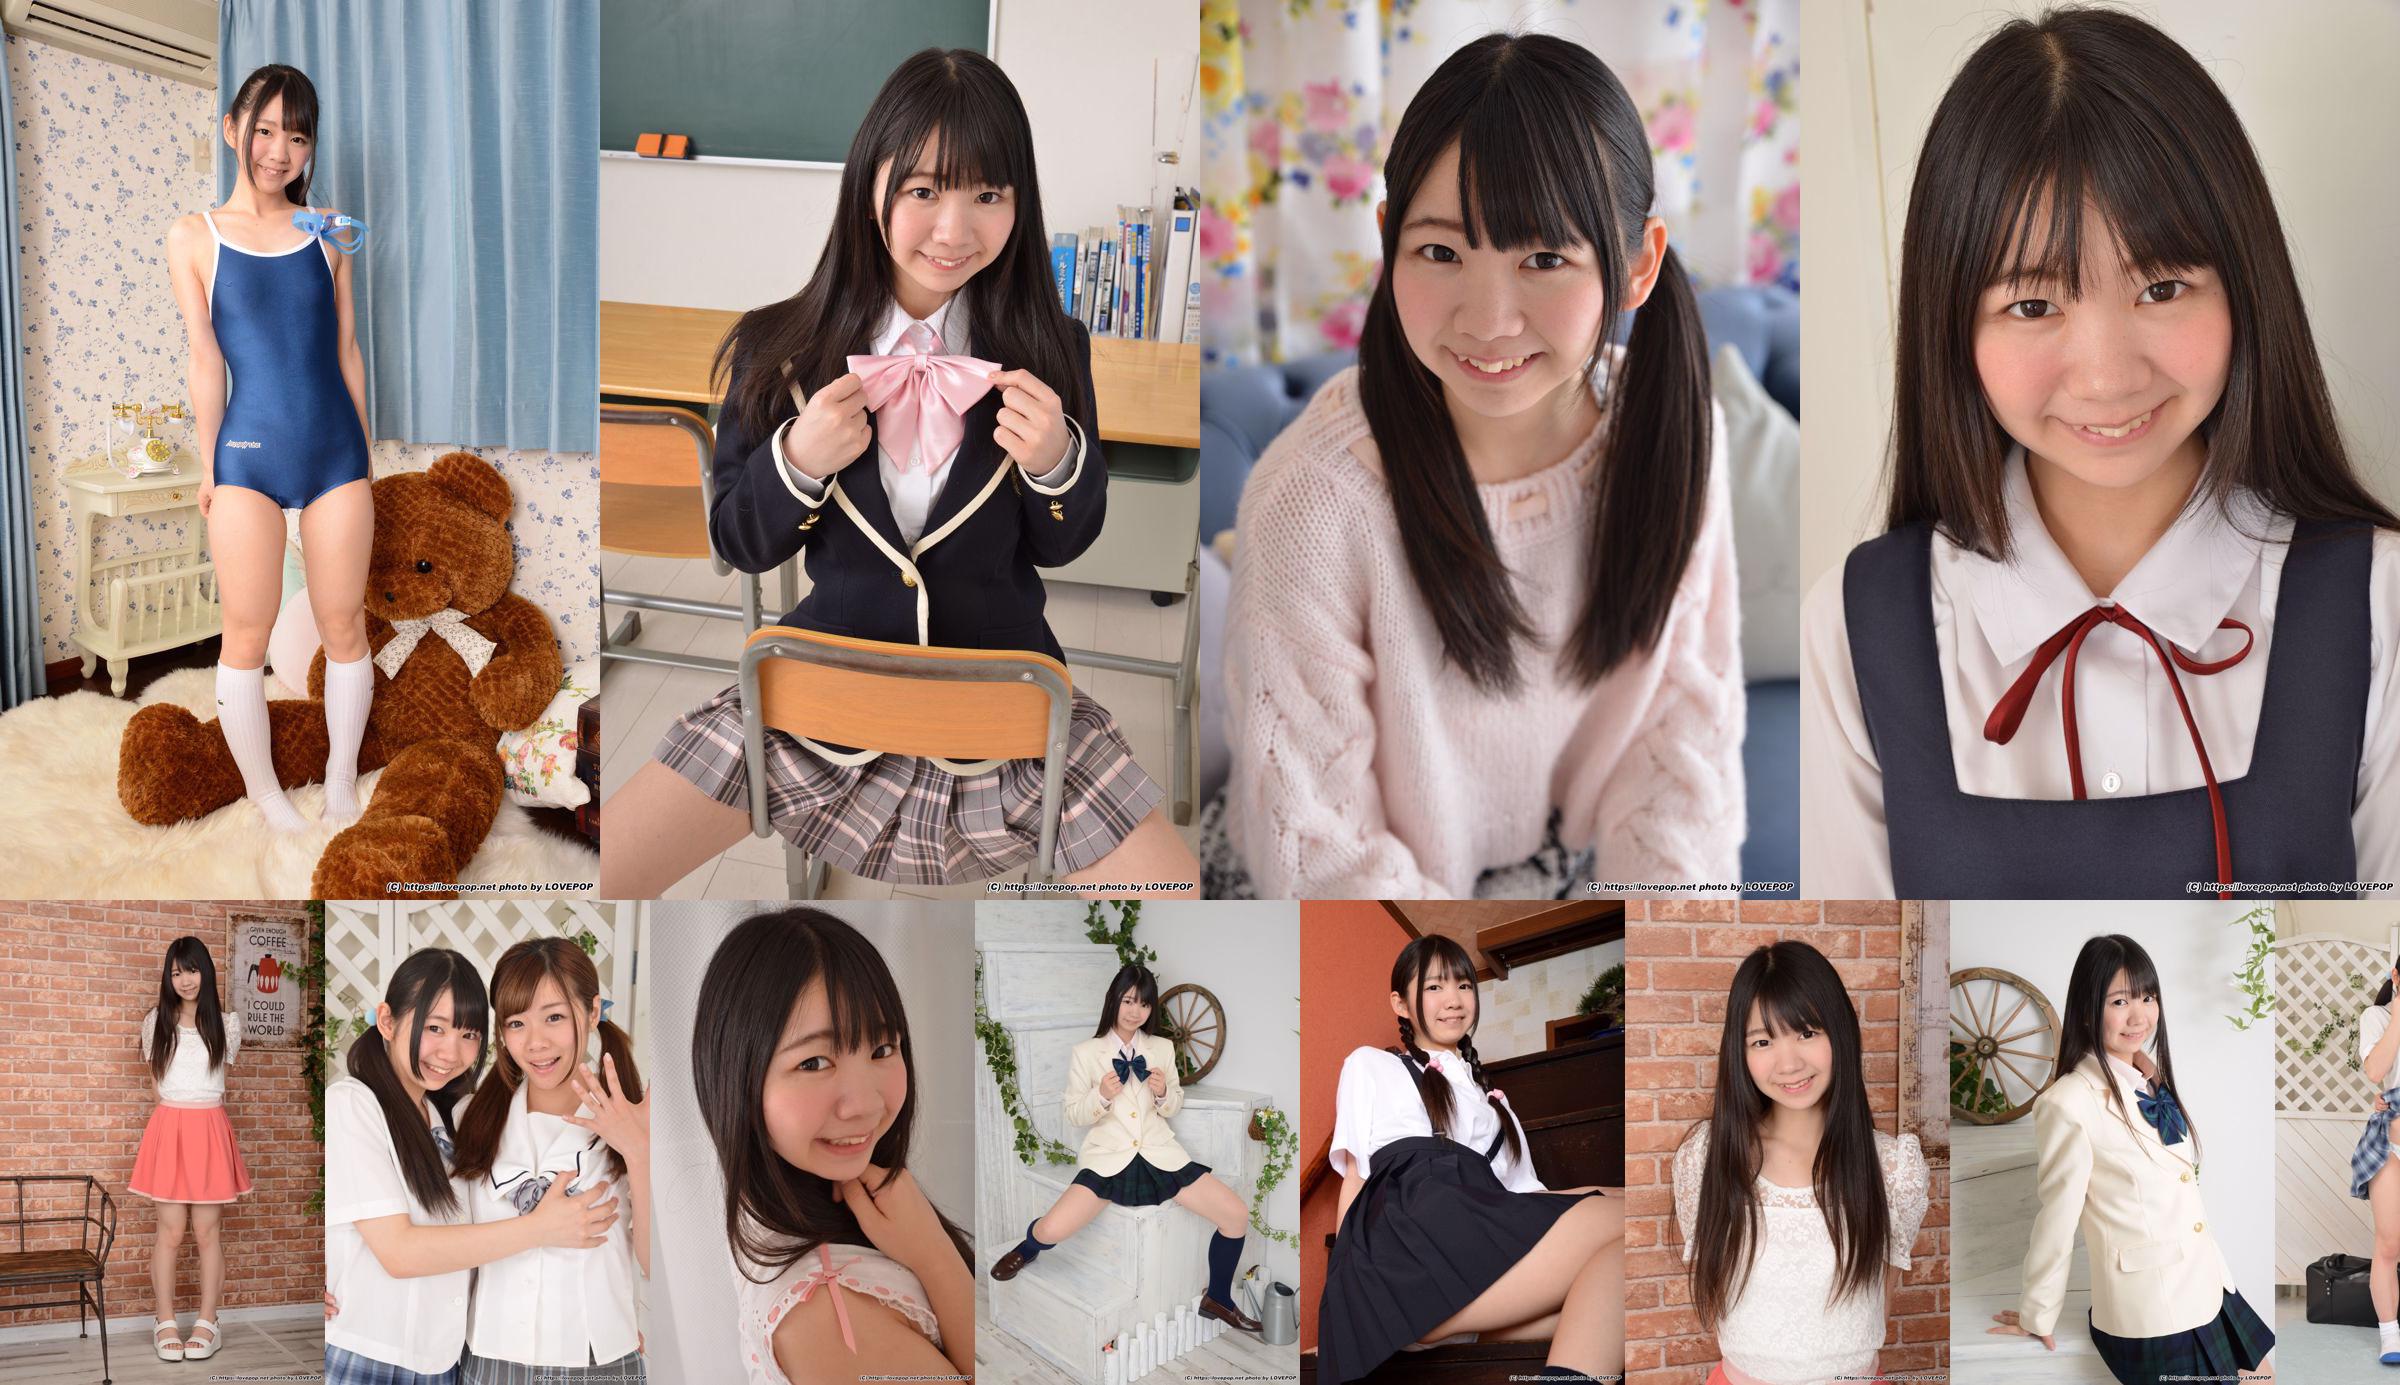 [LOVEPOP] Special Maid Collection - Yuzuka Shirai Shirai ゆずか Photoset 03 No.02463a Page 2